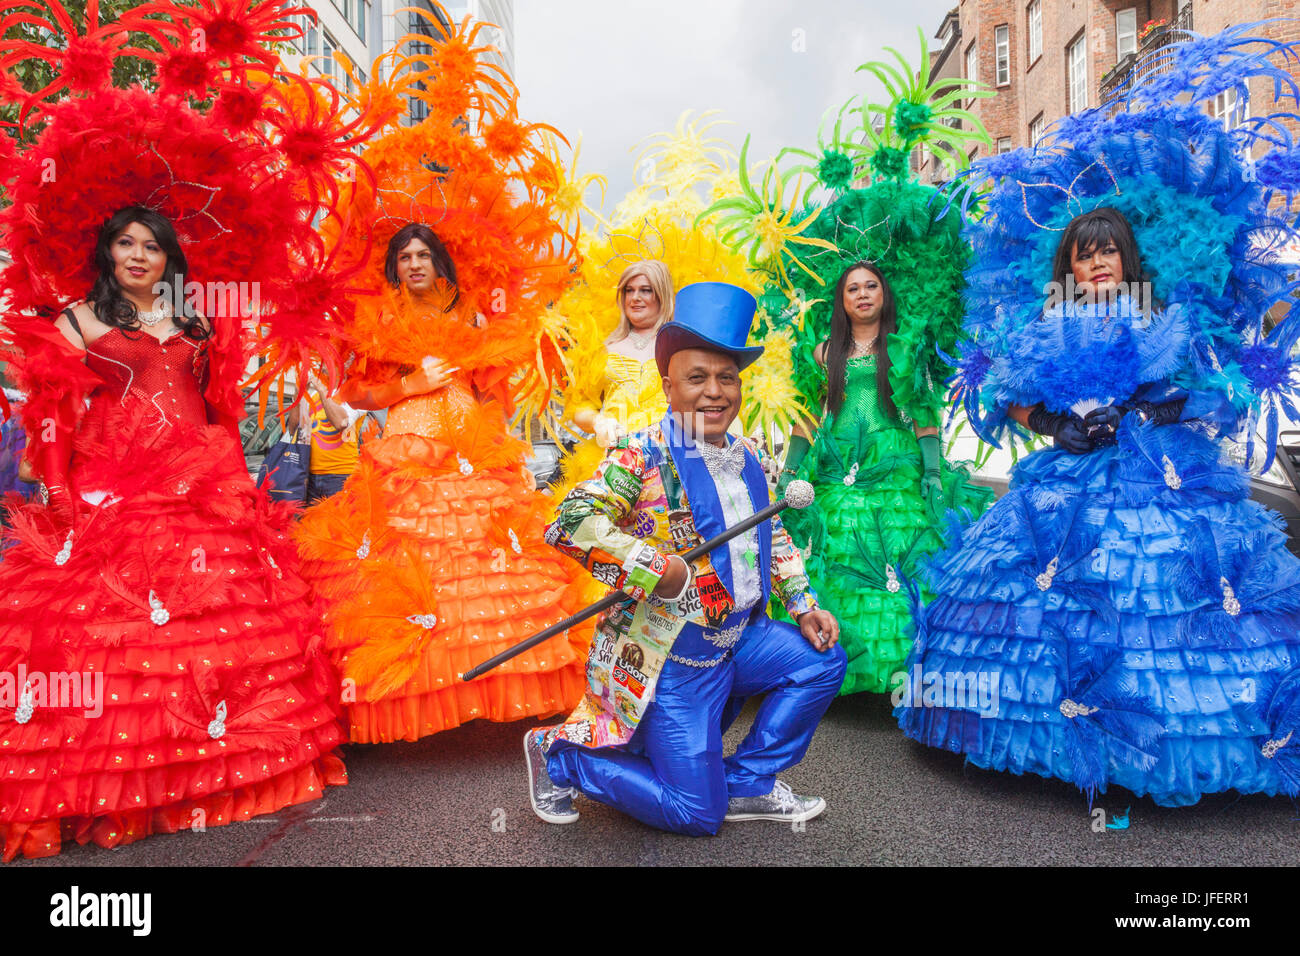 Inglaterra, Londres, el Desfile del Orgullo Gay anual, grupo vestido con orgullo los colores Foto de stock